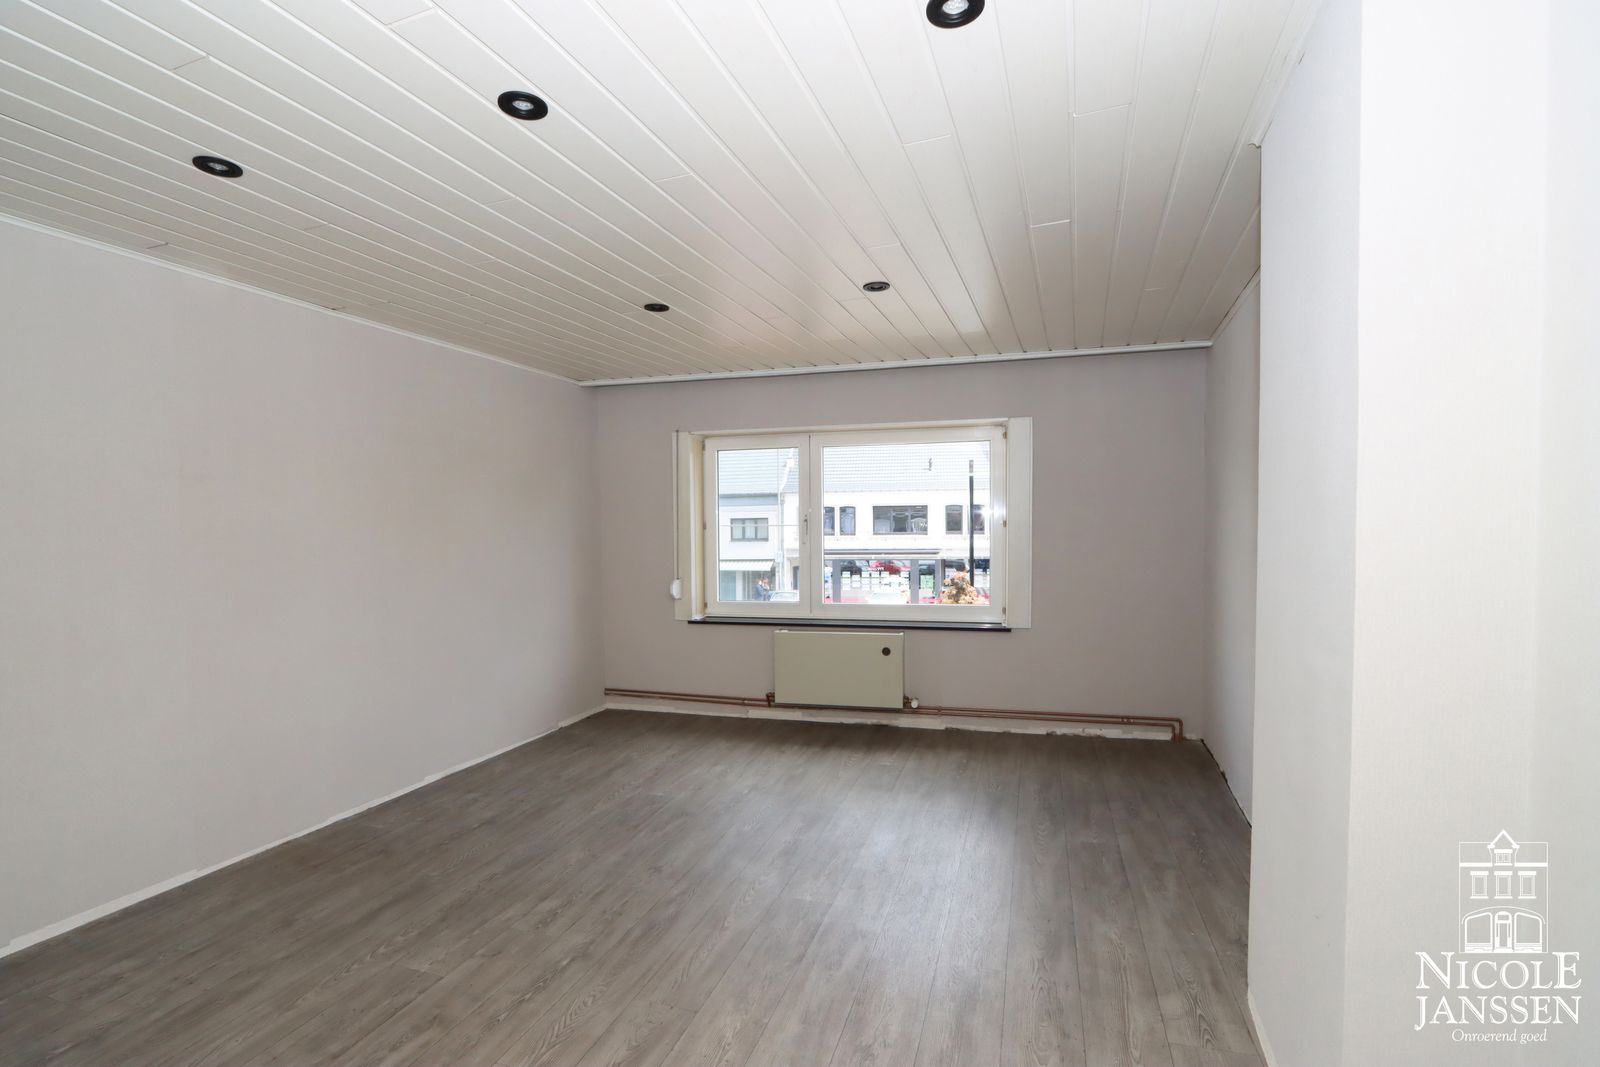 21 Nicole Janssen - huis te koop - Scholtisplein 4 te Neeroeteren - slaapkamer4.jpg